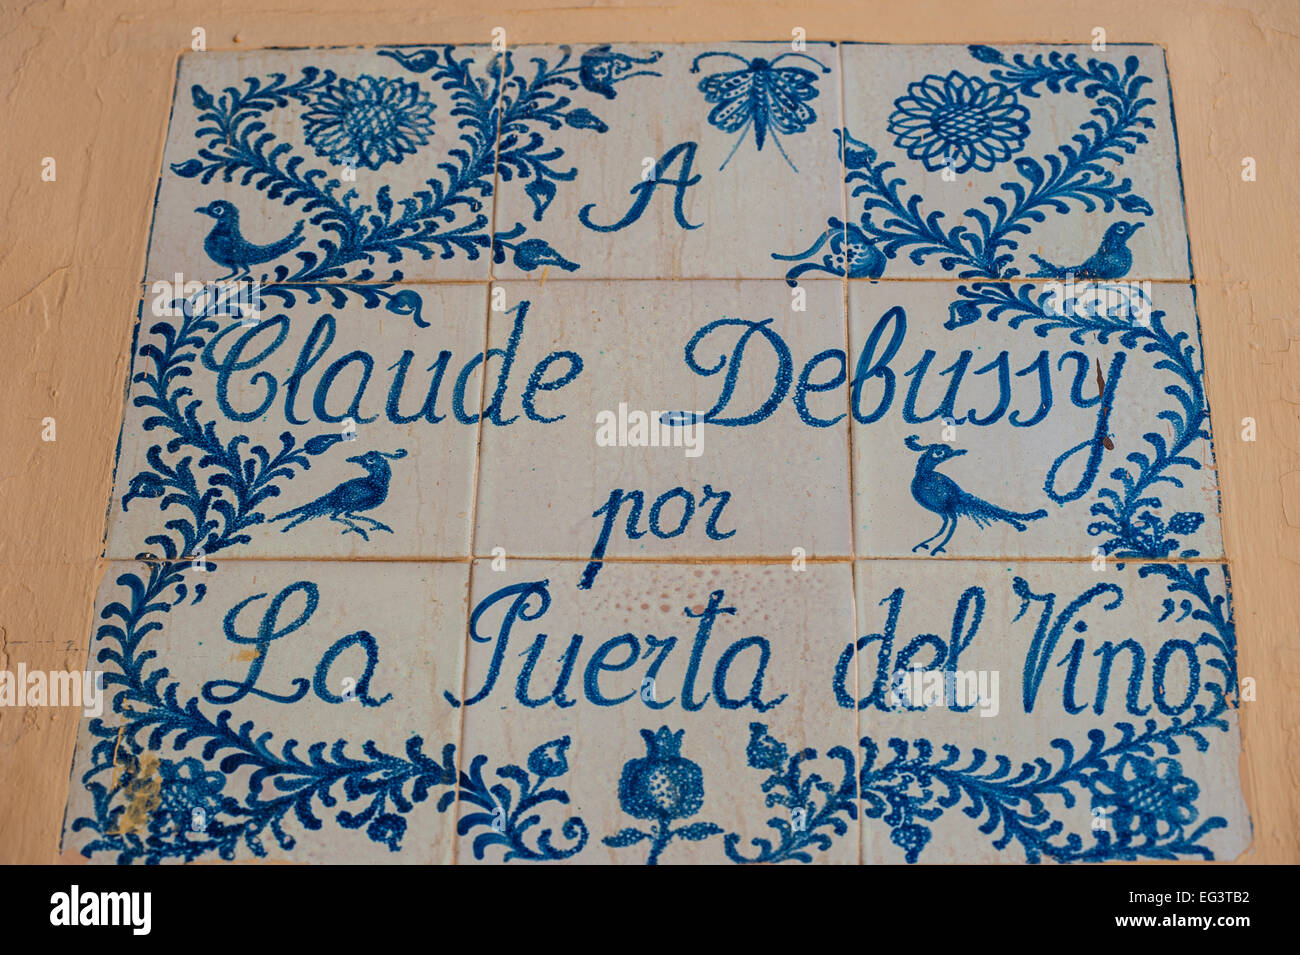 Un Claude Debussy por La Puerta del Vino' -- un azulejo situato vicino al cancello del vino all'interno del Complesso Alhambra di Granada, Spagna. Foto Stock